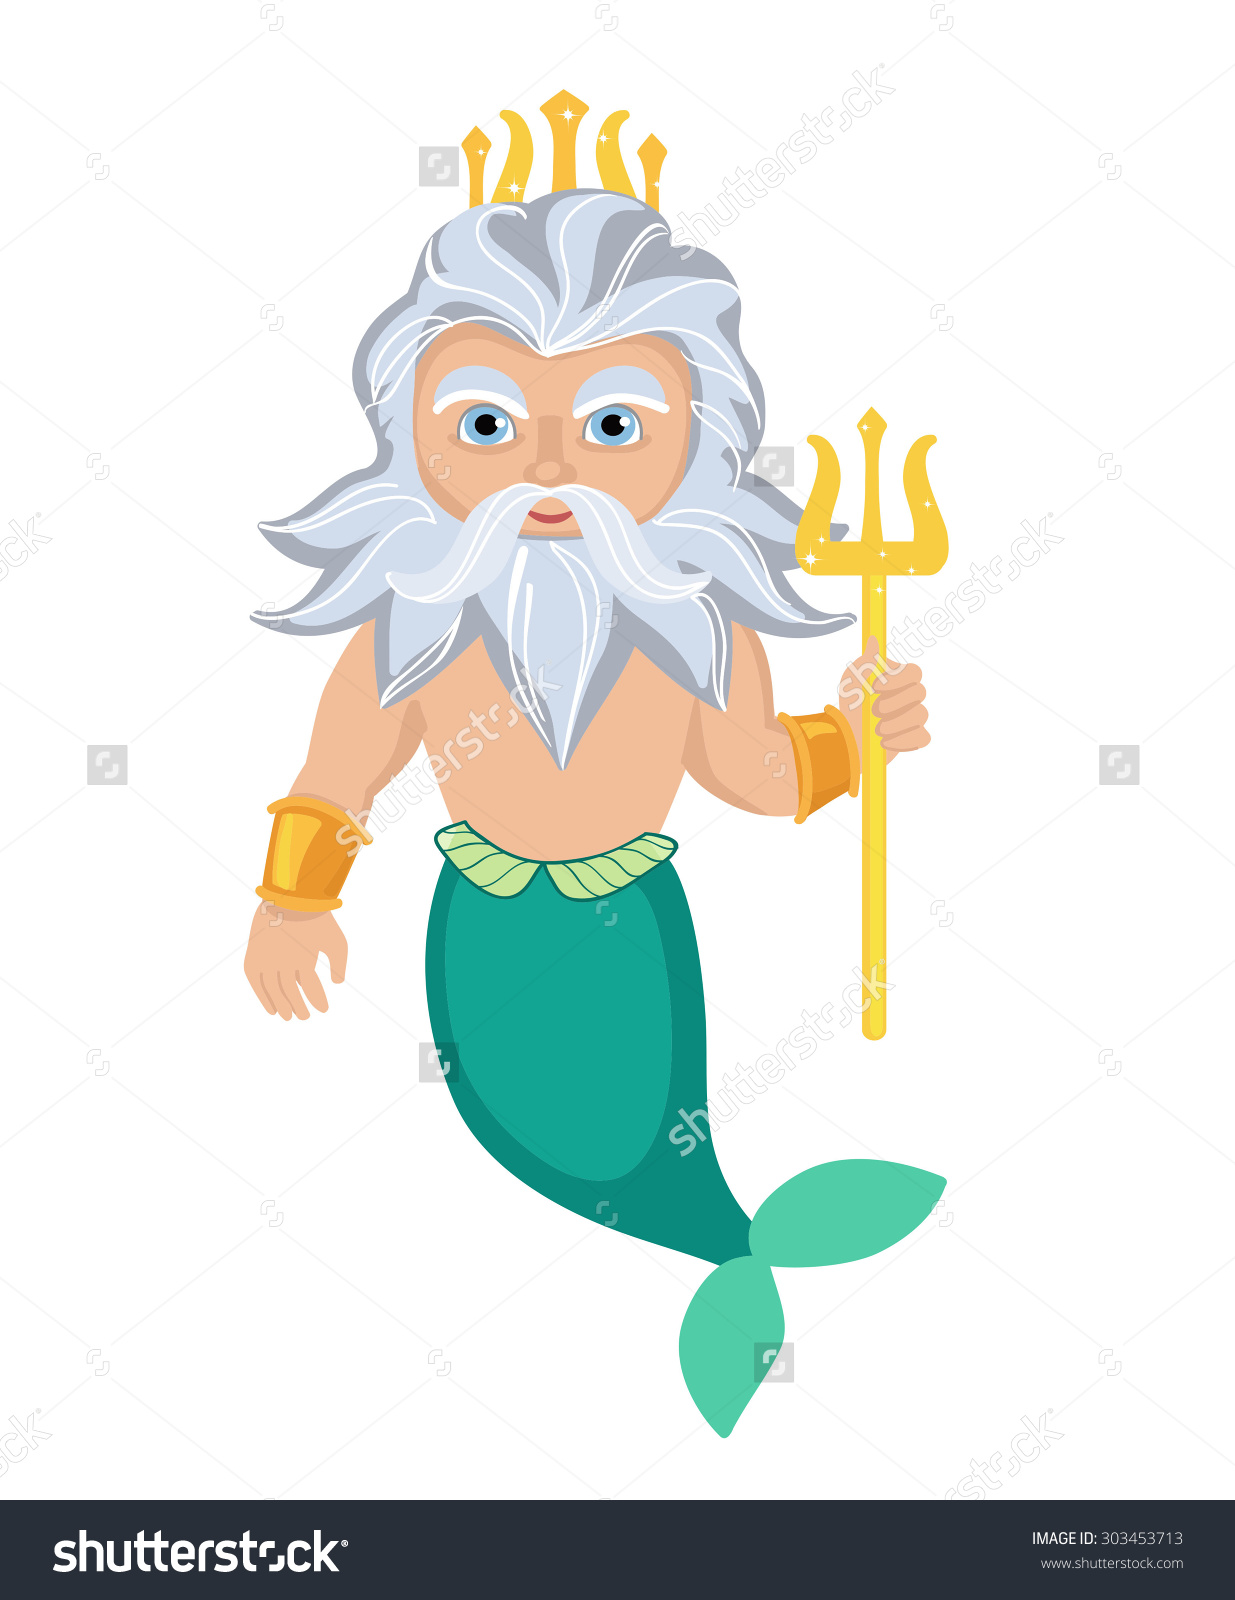 Poseidon cartoon